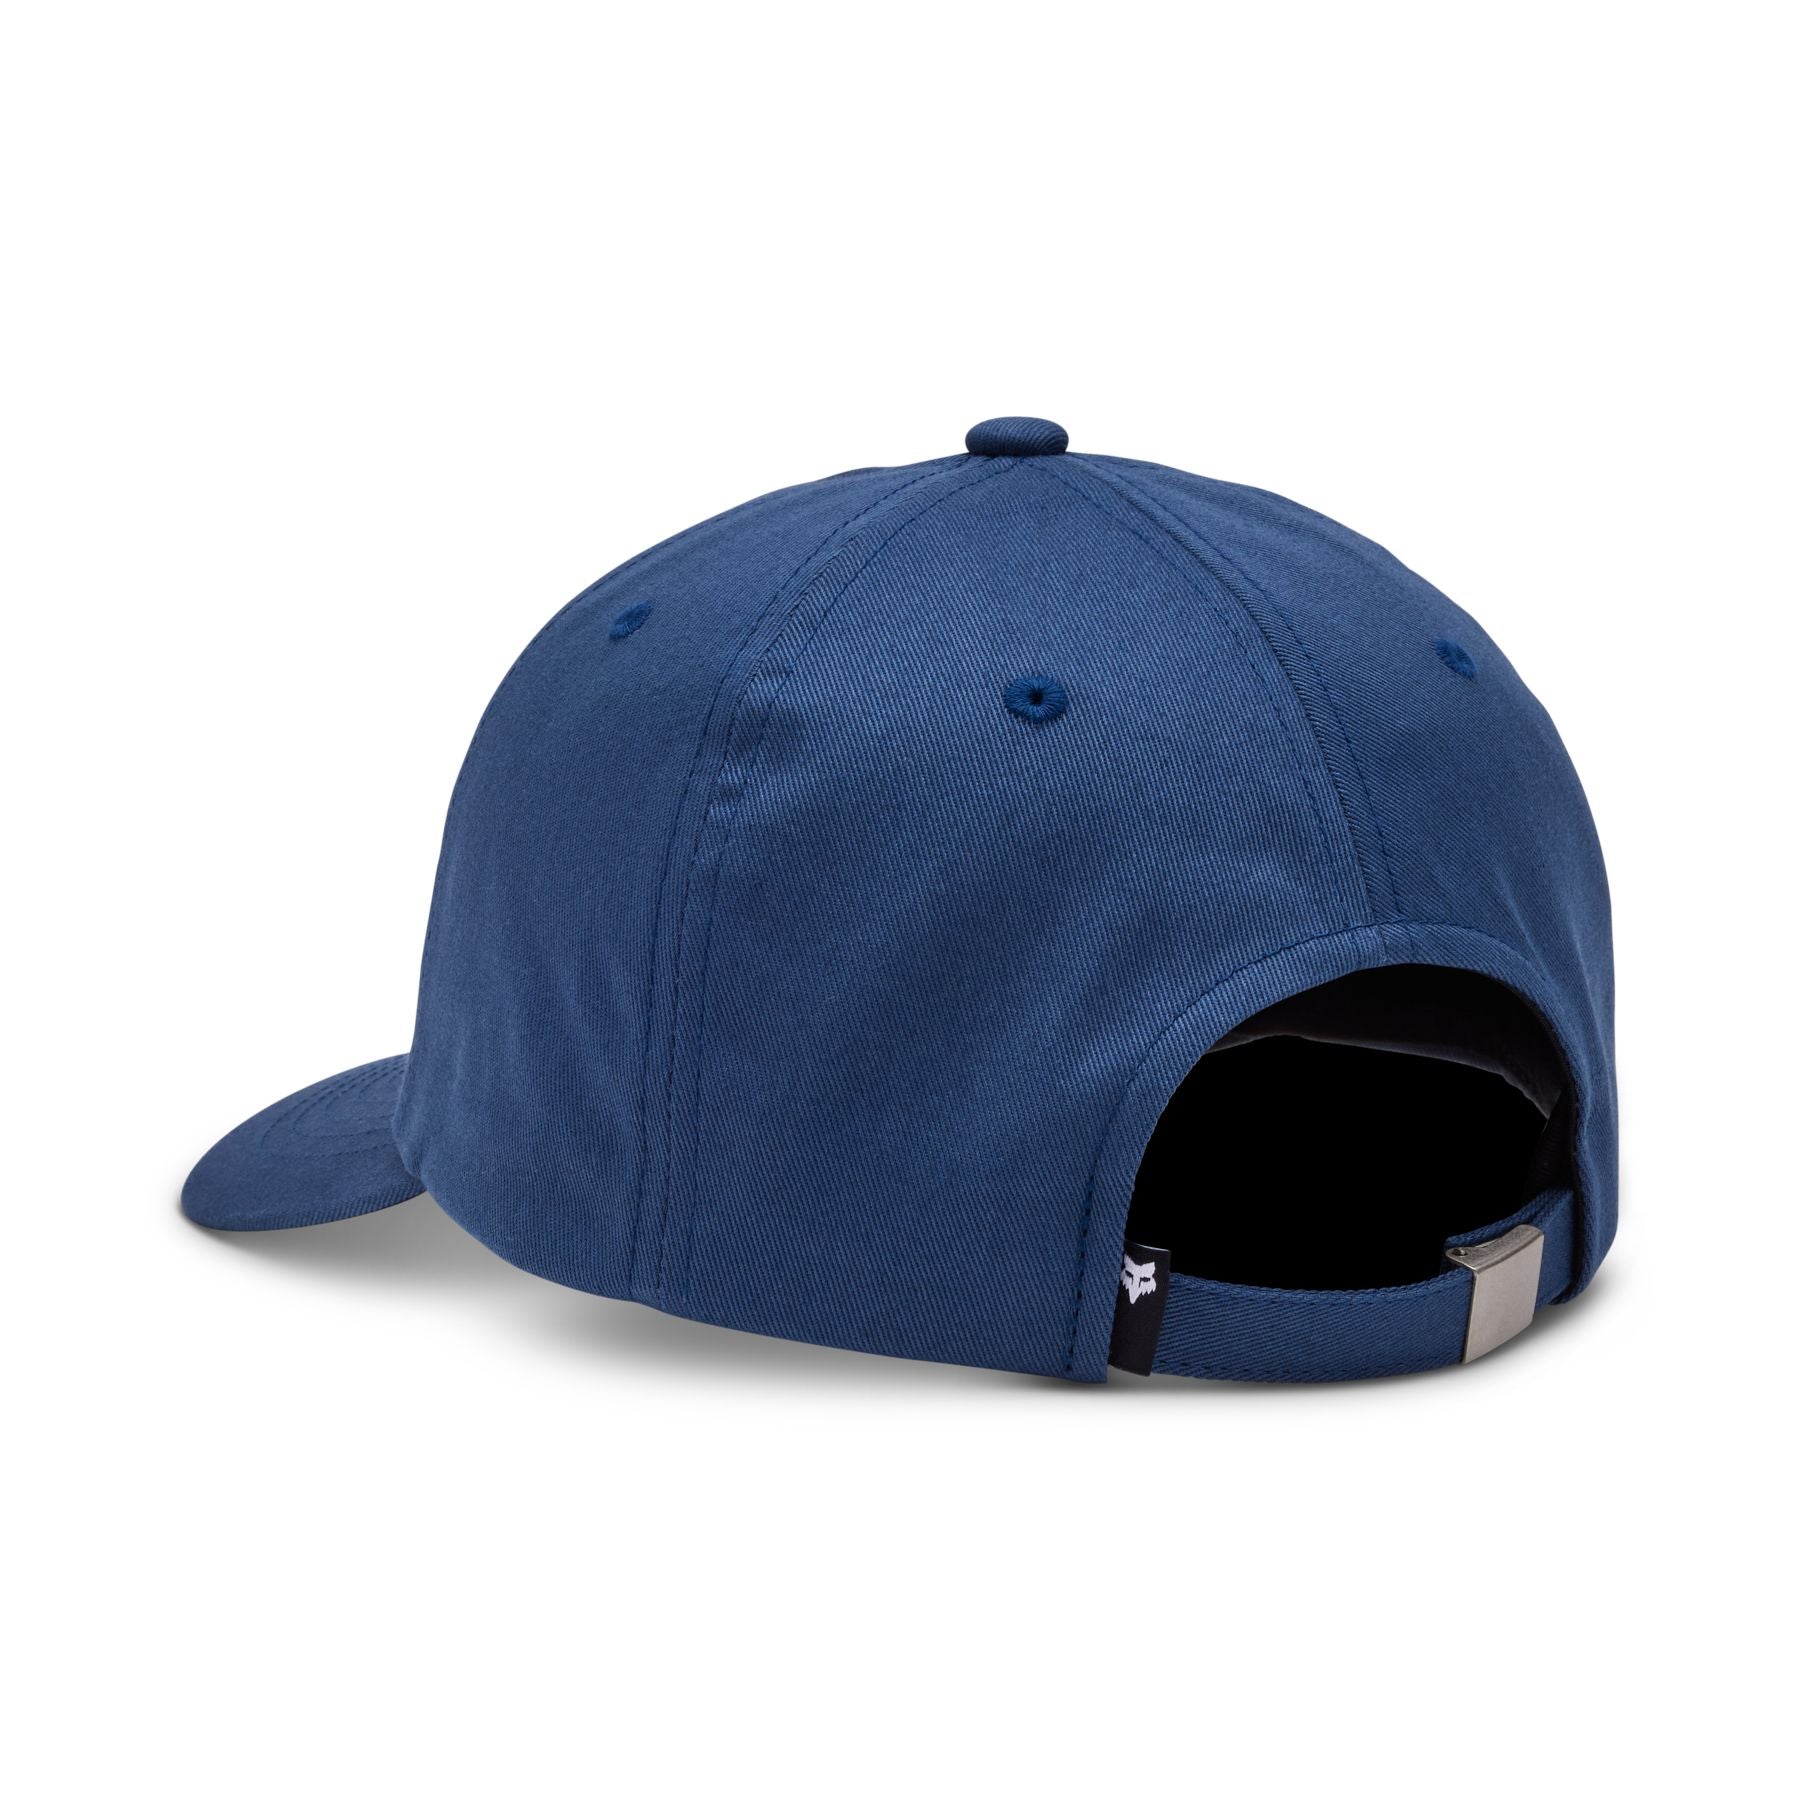 Fox Wordmark Adjustable Hat